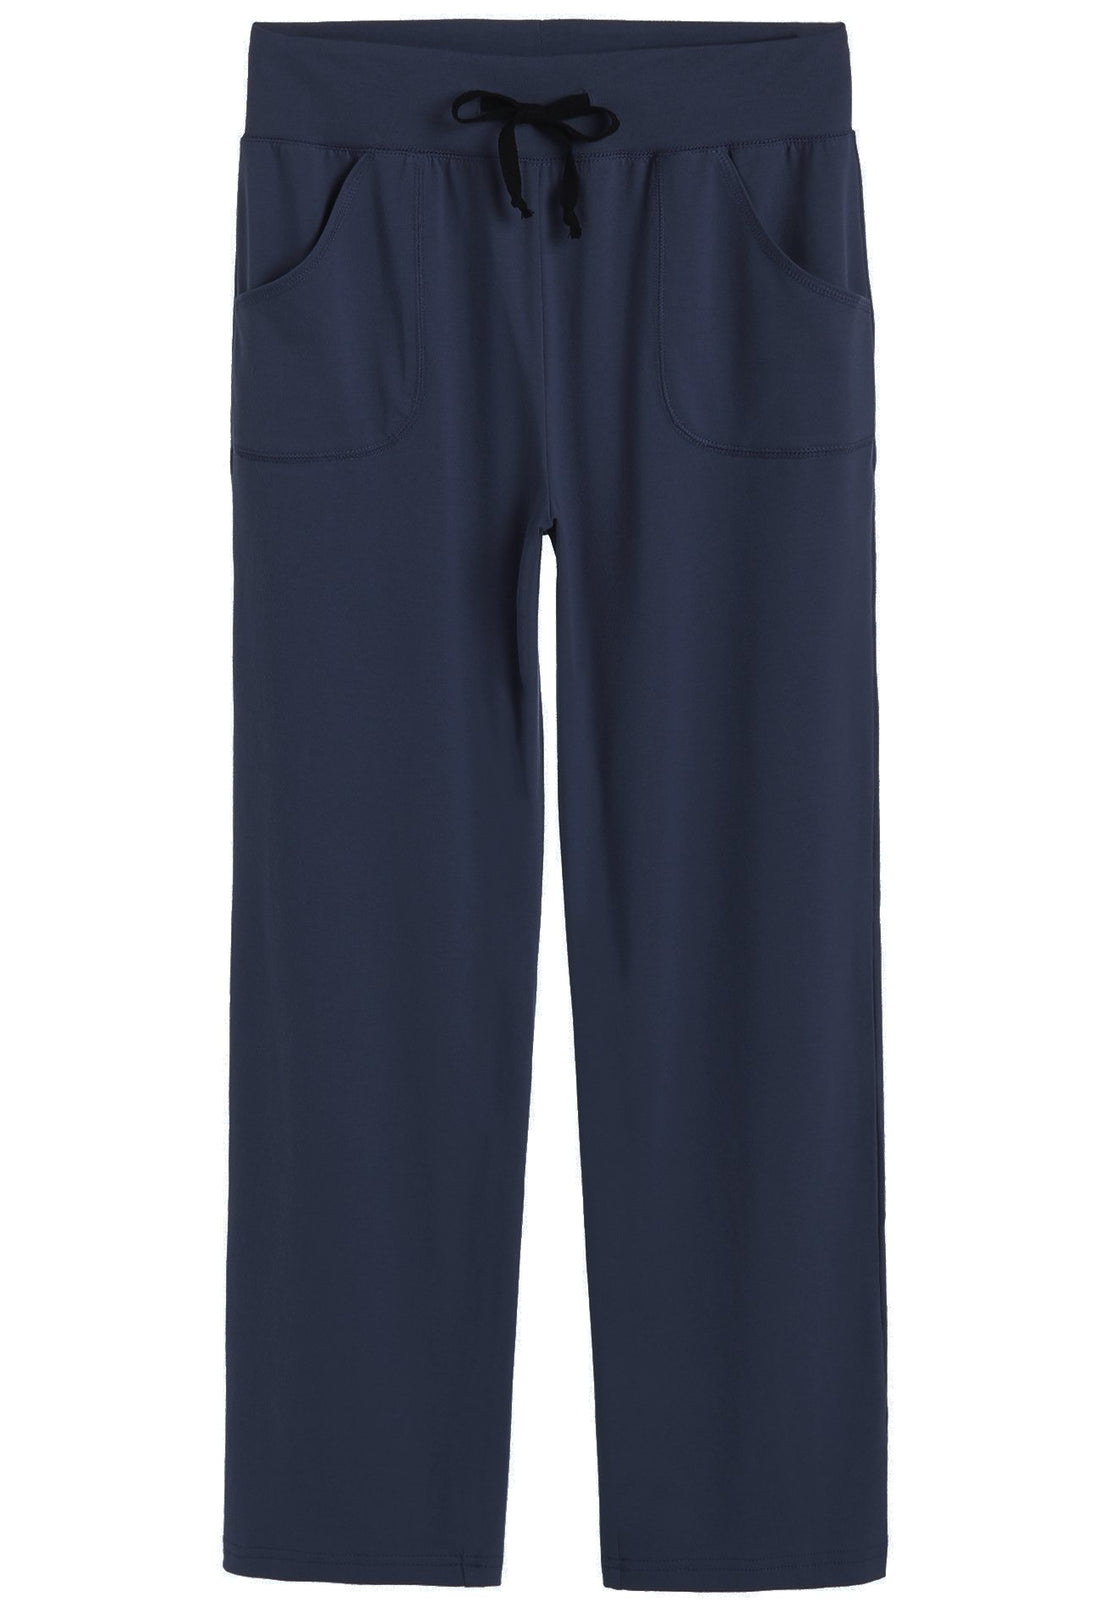 Latuza Women’s Cotton Pajama Pants